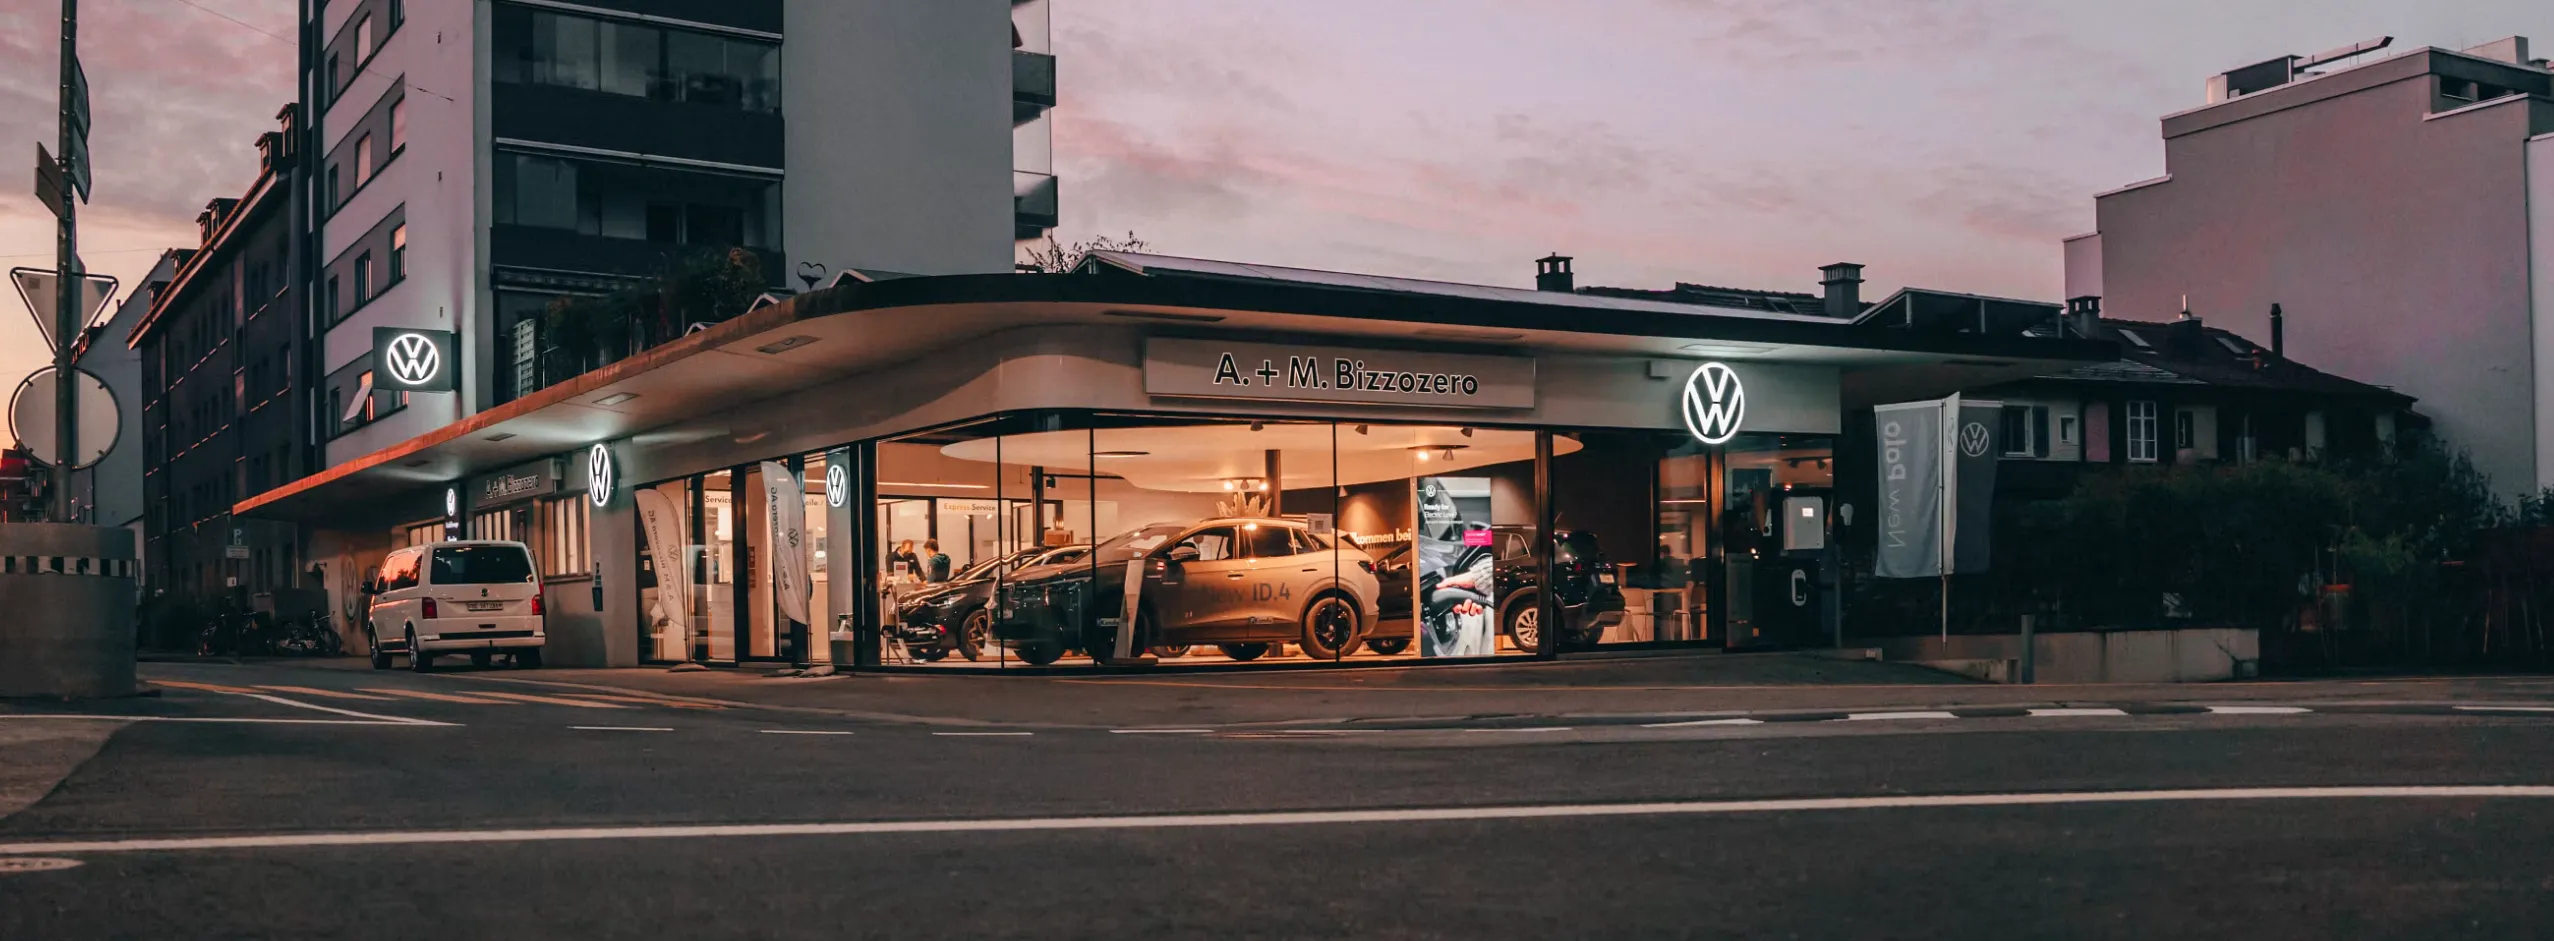 A. & M. Bizzozero VW Garage Bern